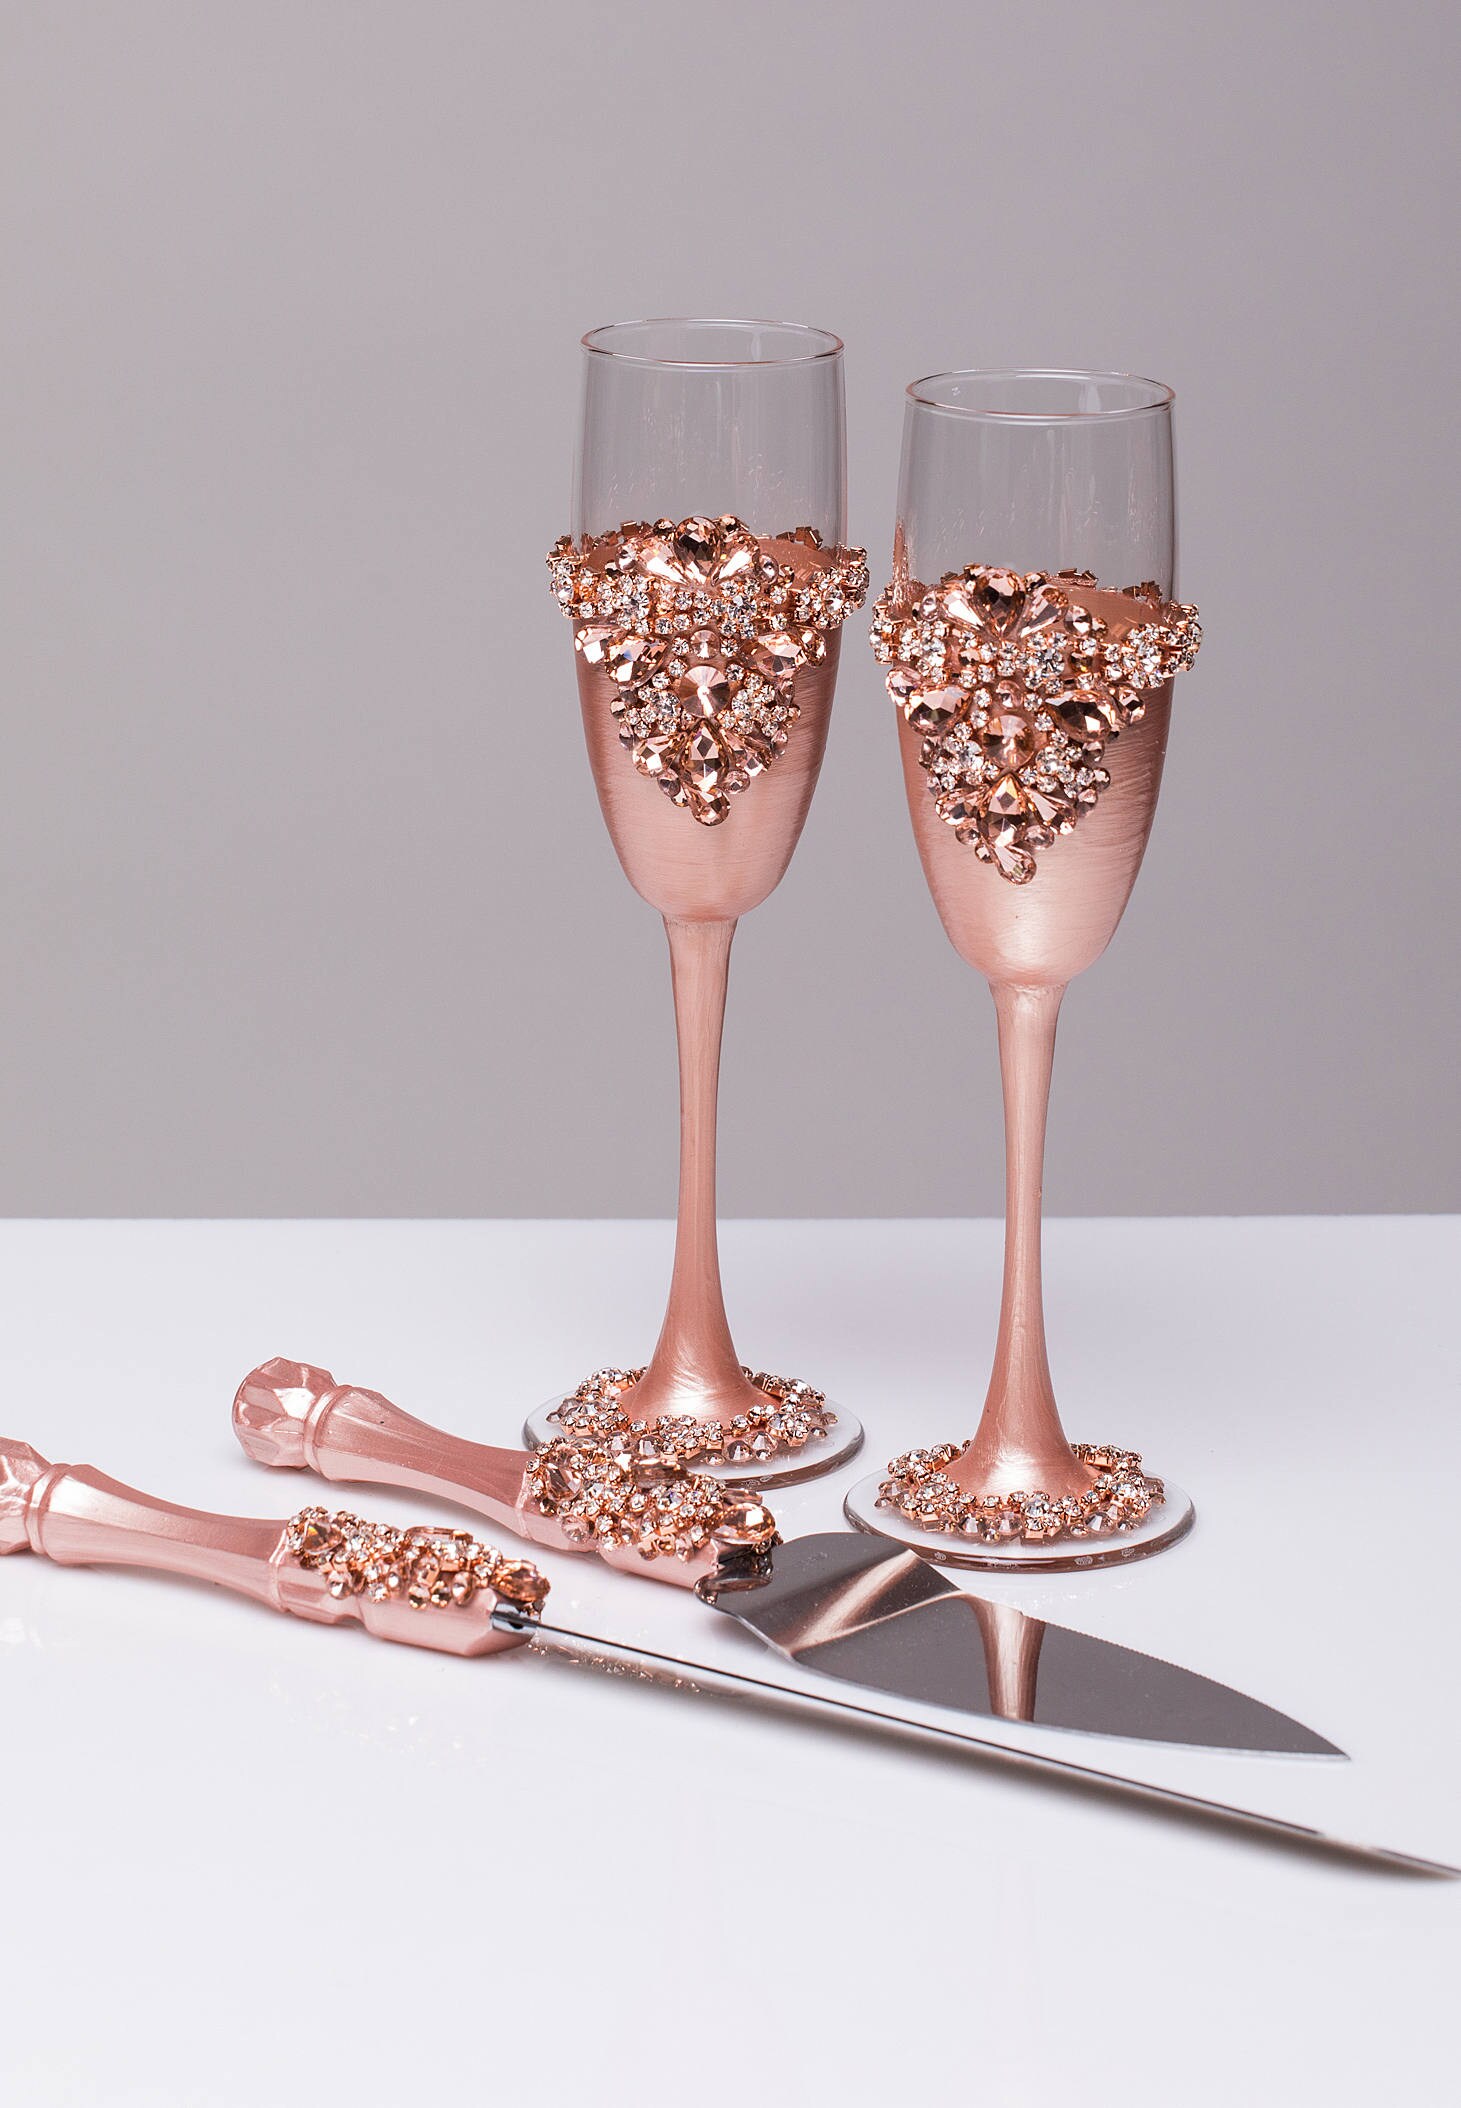 Download ROSE GOLD Wedding glasses and Cake Server Set cake knife rose